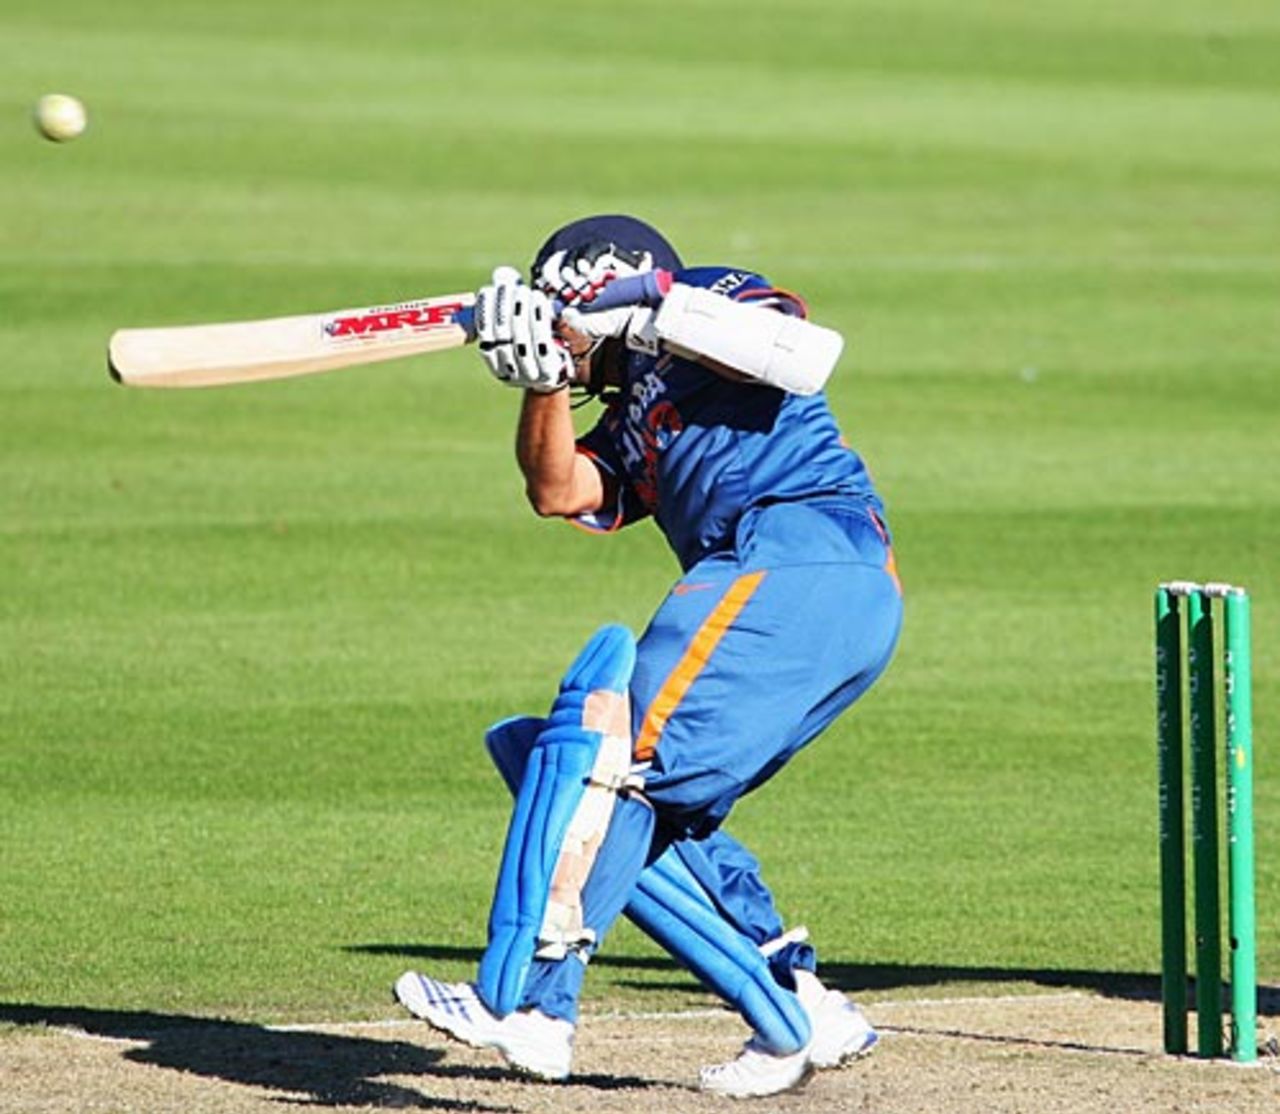 Sachin Tendulkar ducks under a beamer, New Zealand v India, 3rd ODI, Christchurch, March 8, 2009